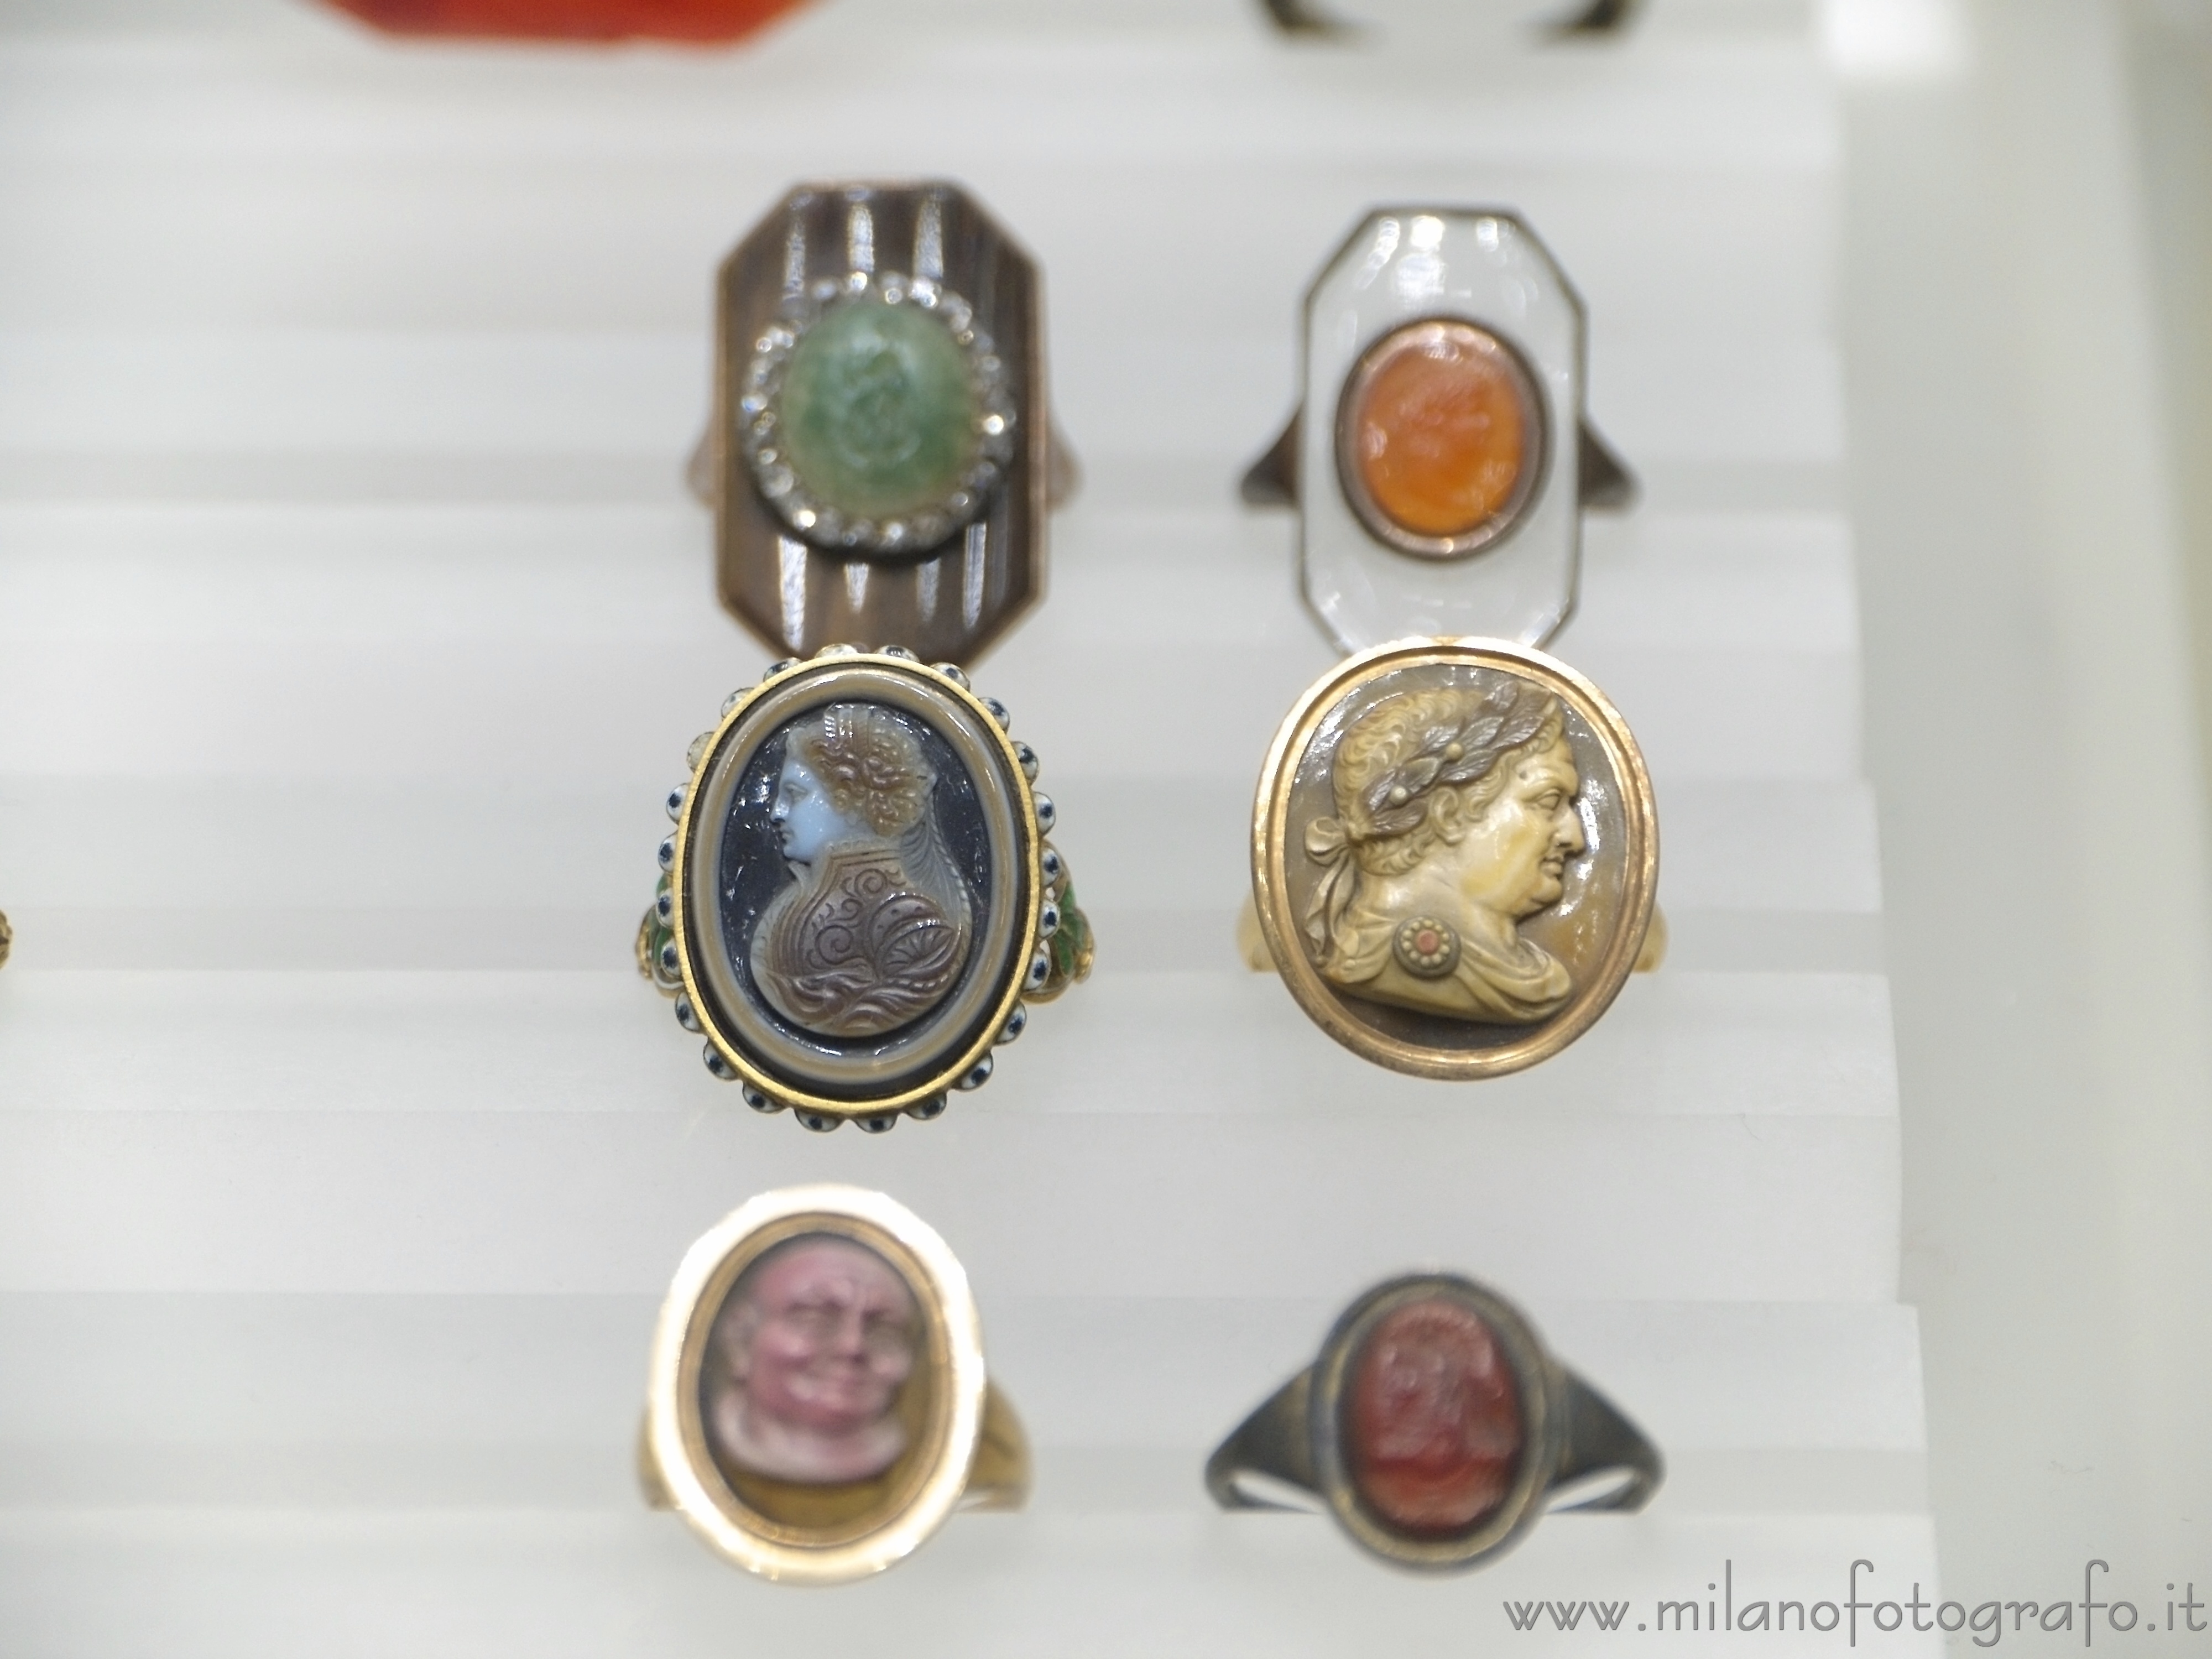 Milano: Anelli della collezione di gioielli antichi del Museo Poldi Pezzoli - Milano